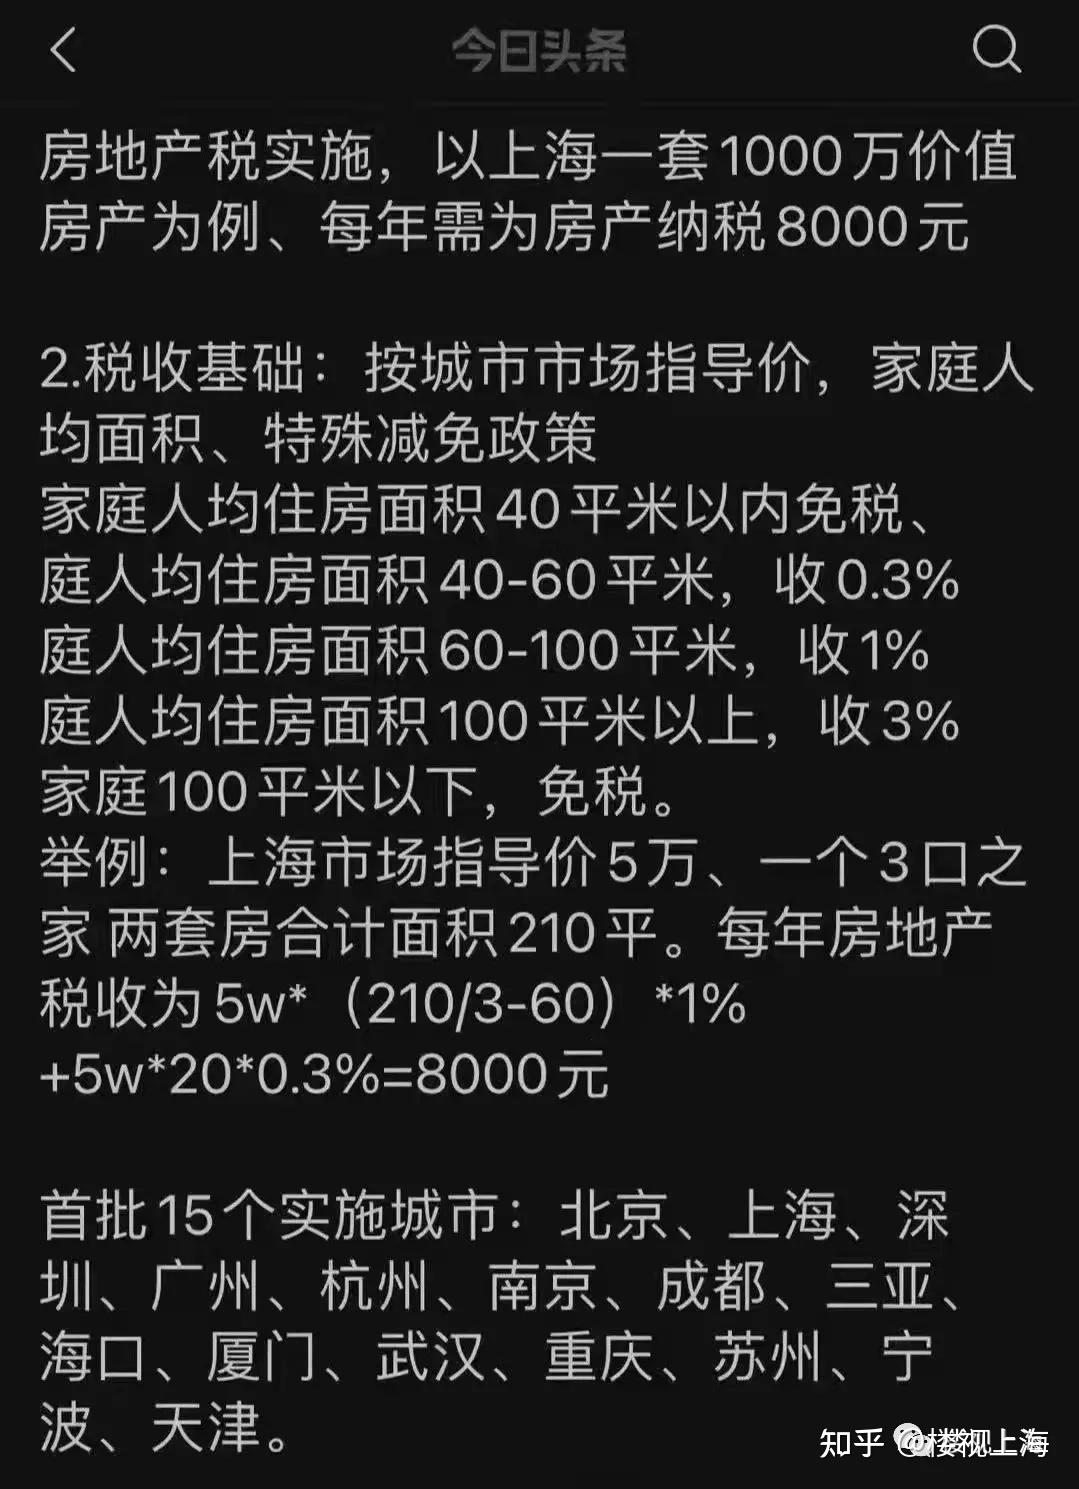 上海将入选房地产税试点城市?房价这次能降了吗?